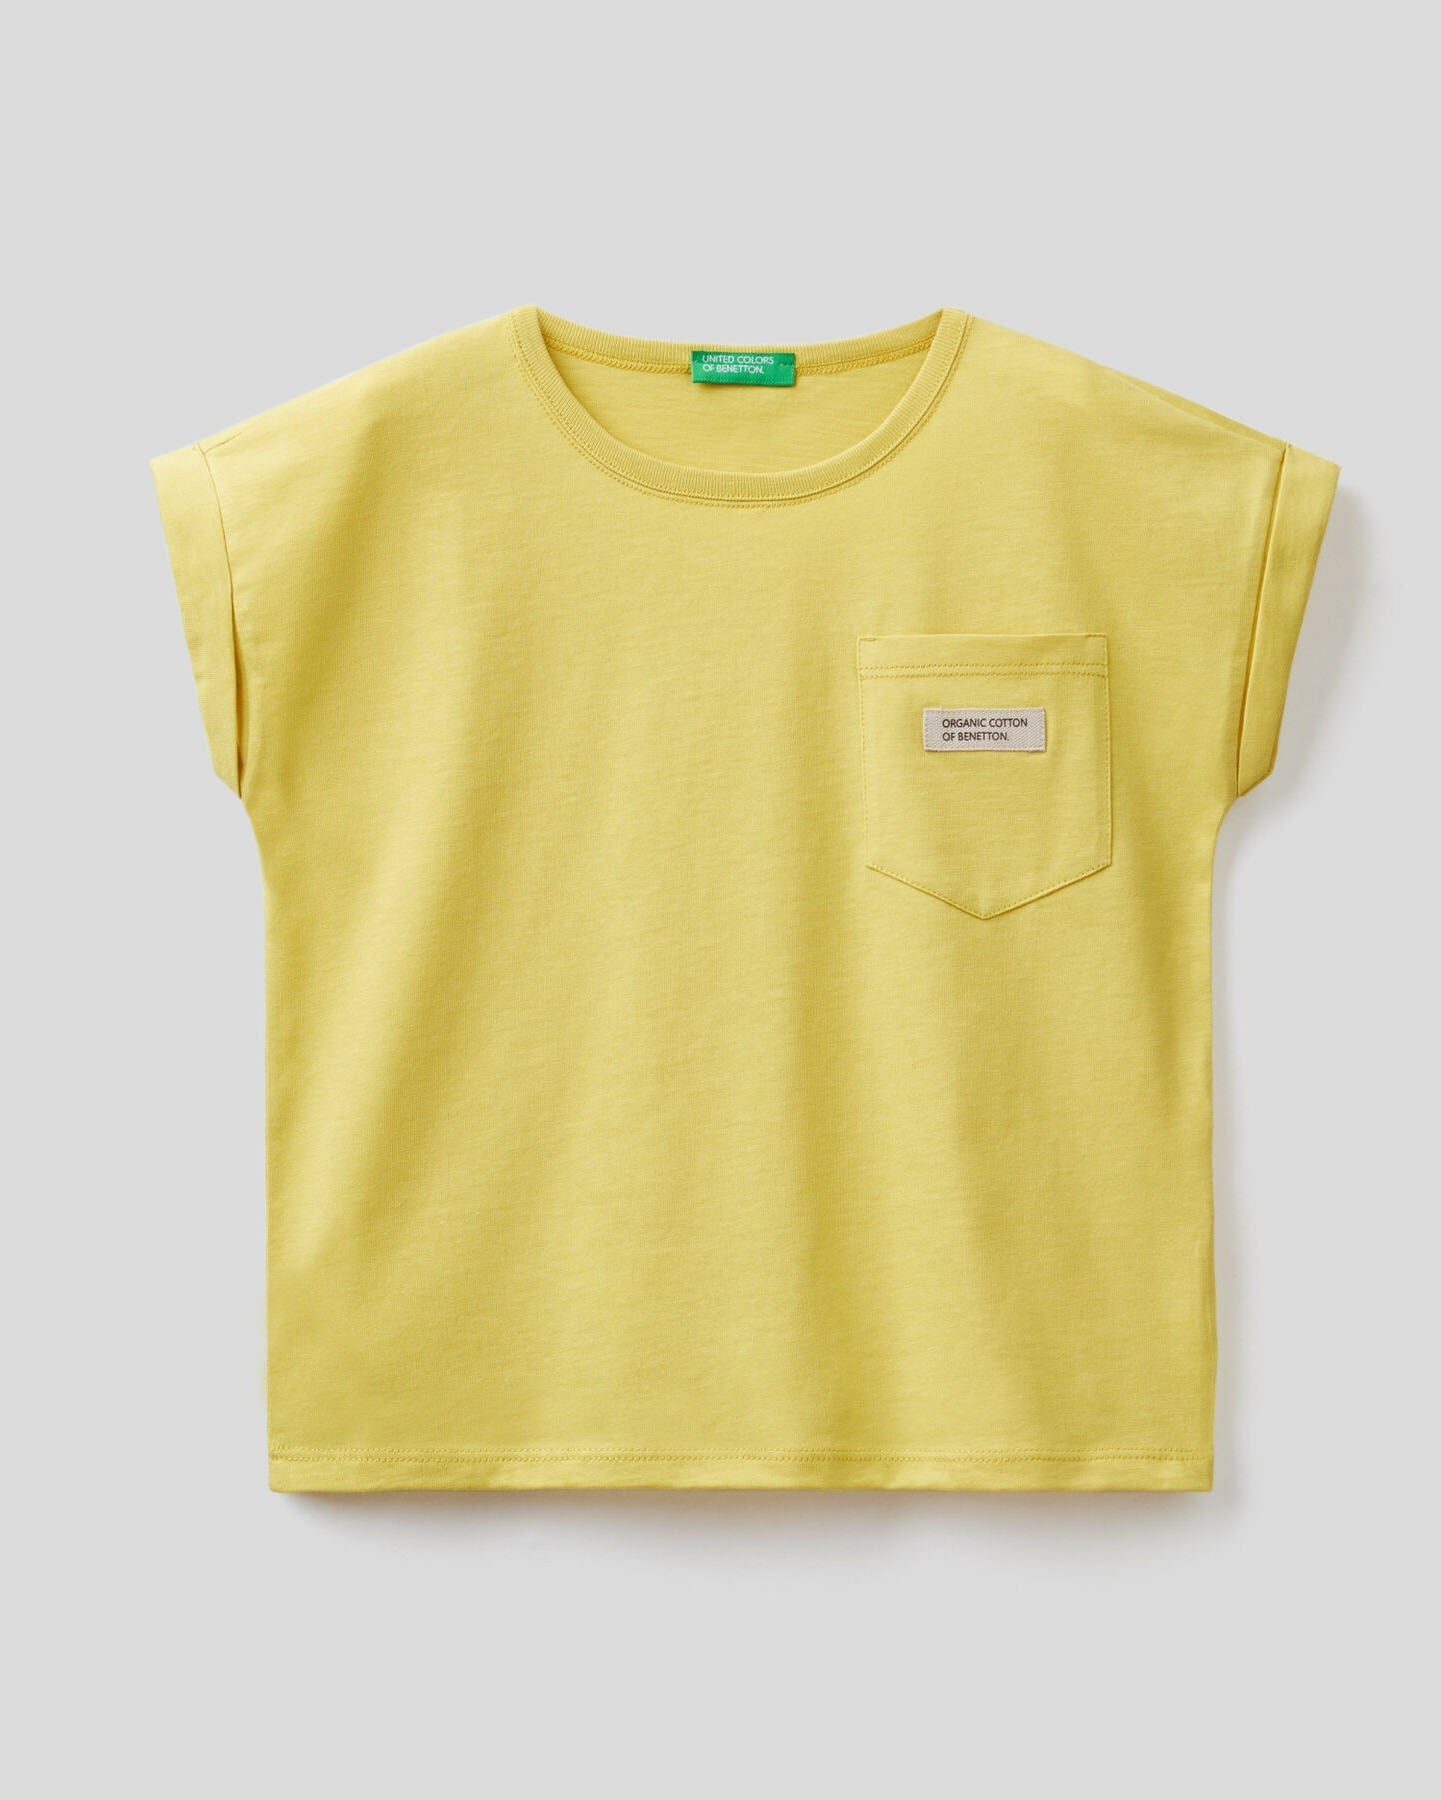 Yellow T-Shirt